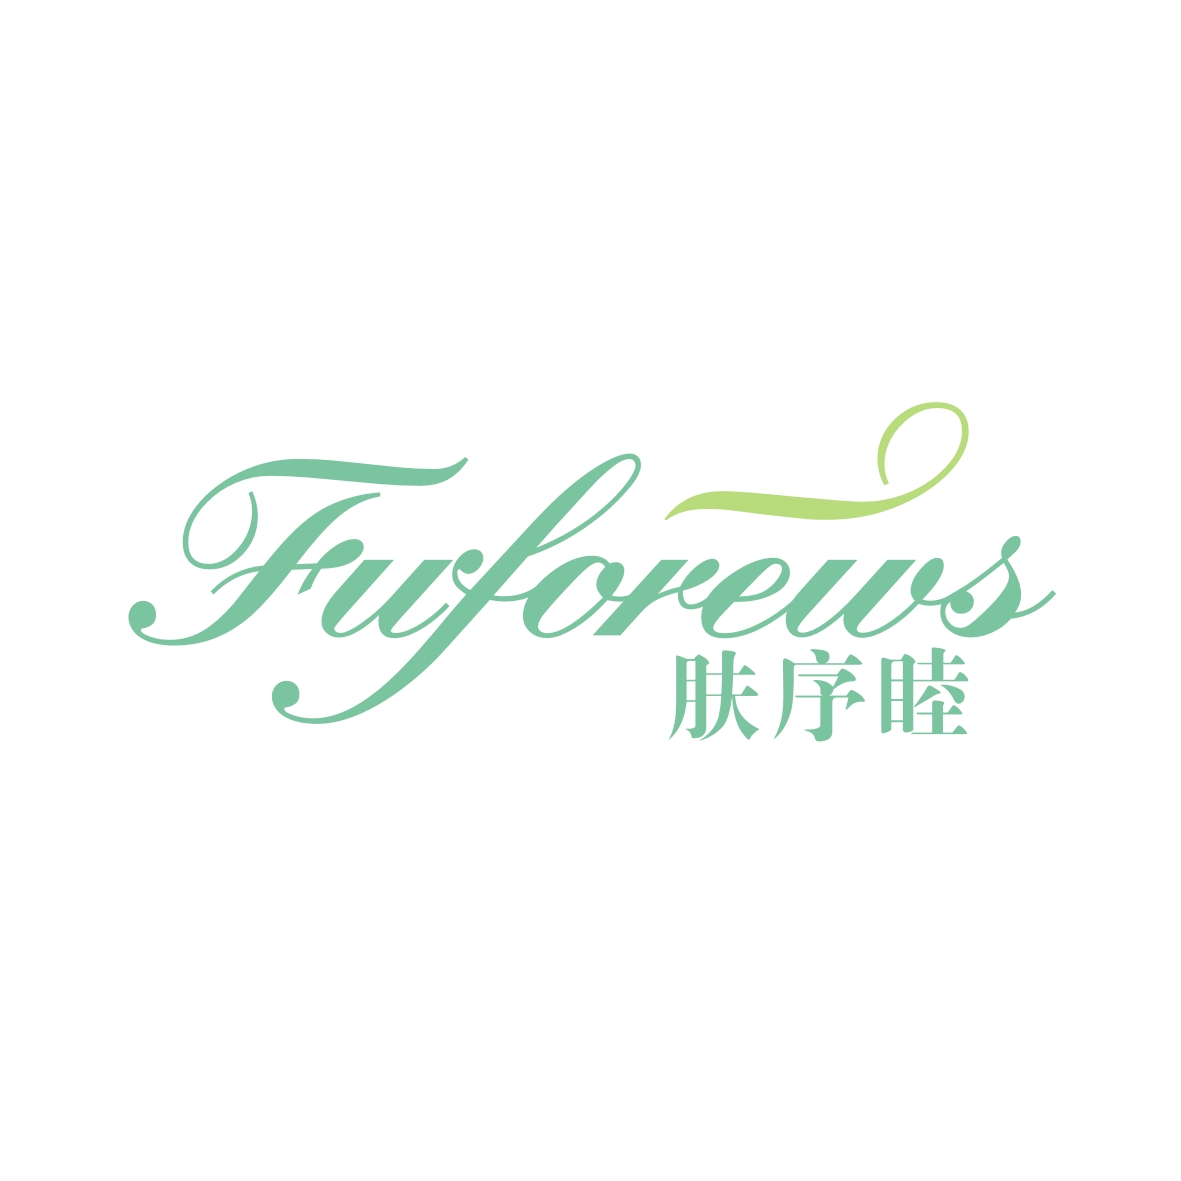 广州市龙曦生物科技有限公司商标肤序睦 FUFOREWS（03类）商标买卖平台报价，上哪个平台最省钱？